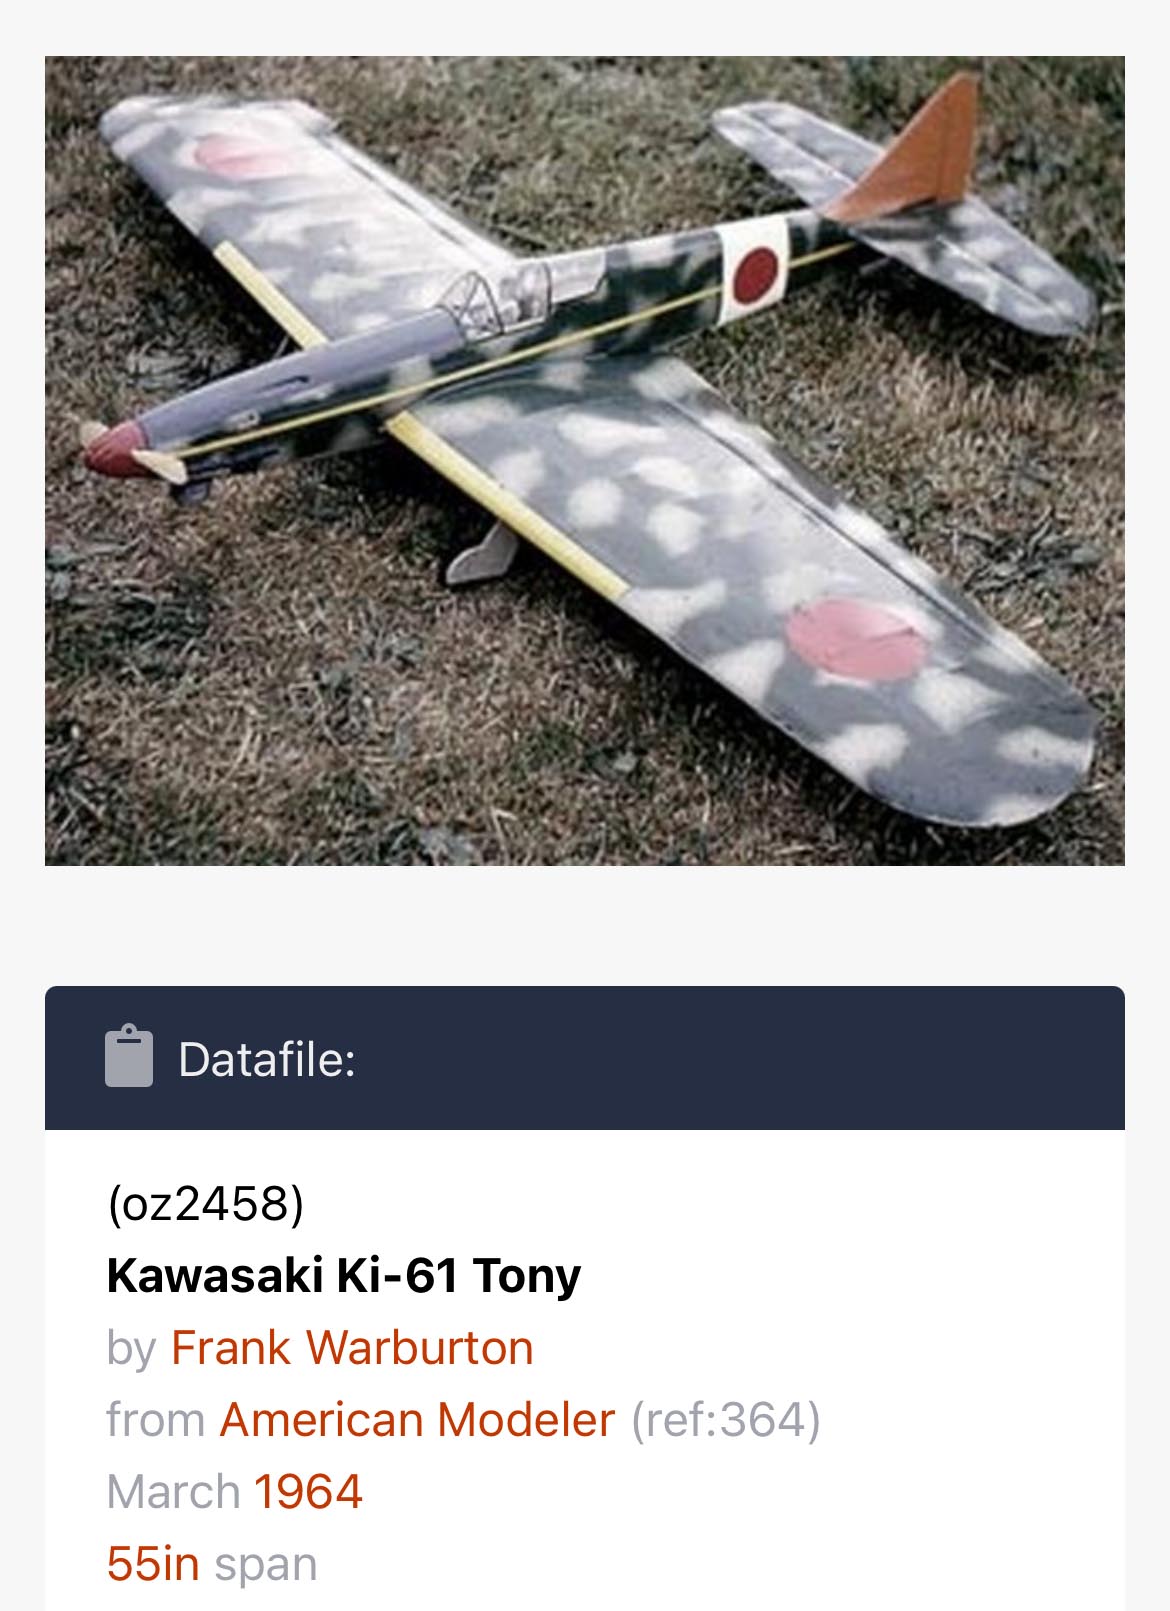 Kawasaki Tony.jpg